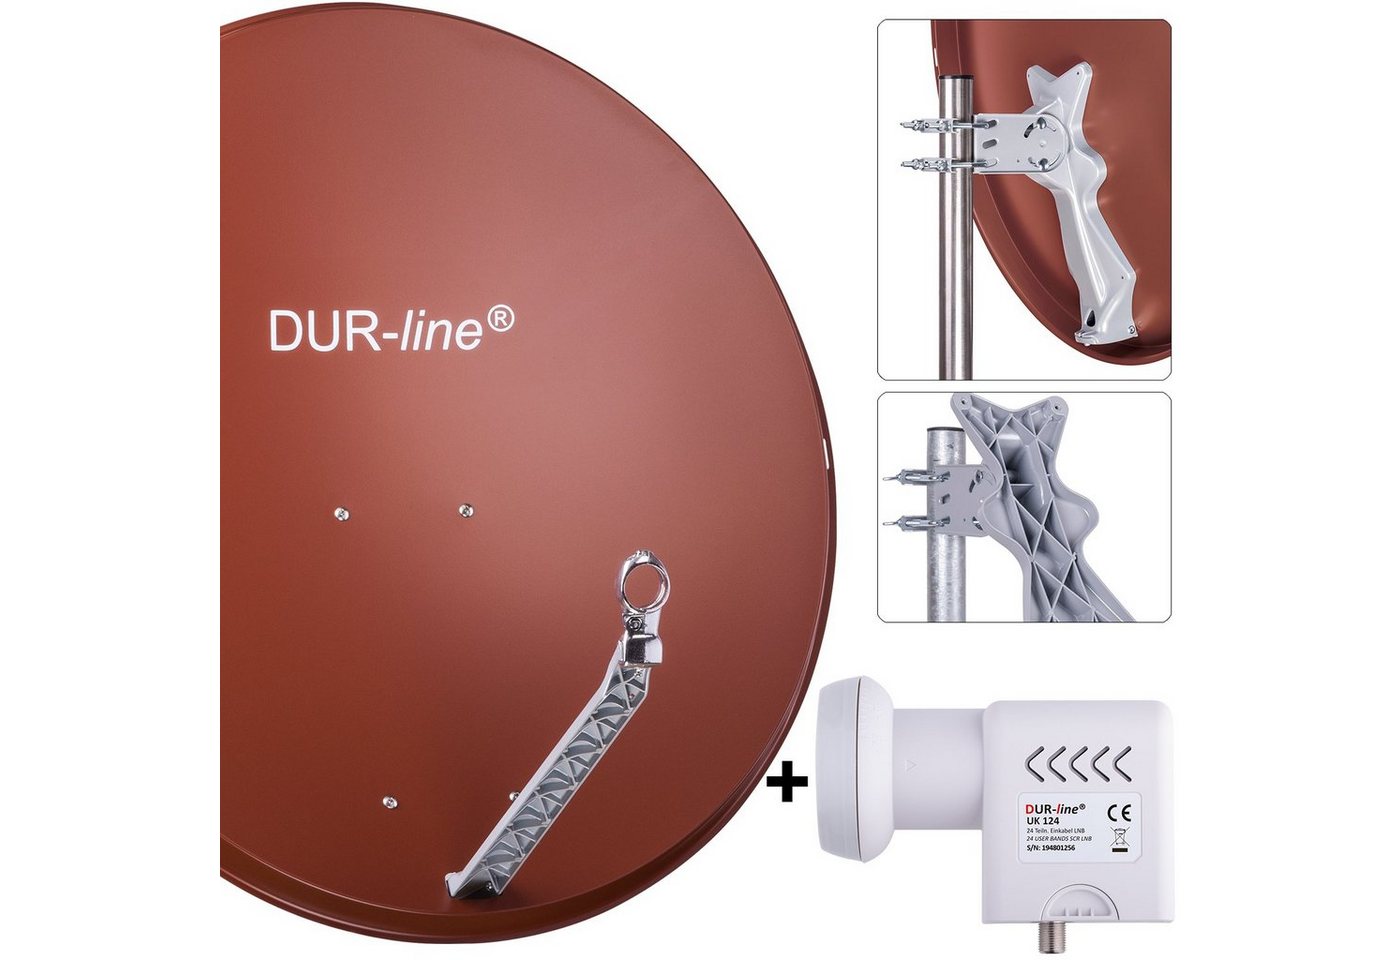 DUR-line DUR-line Select 85/90 R + UK 124 LNB - Einkabel Set Sat-Spiegel von DUR-line